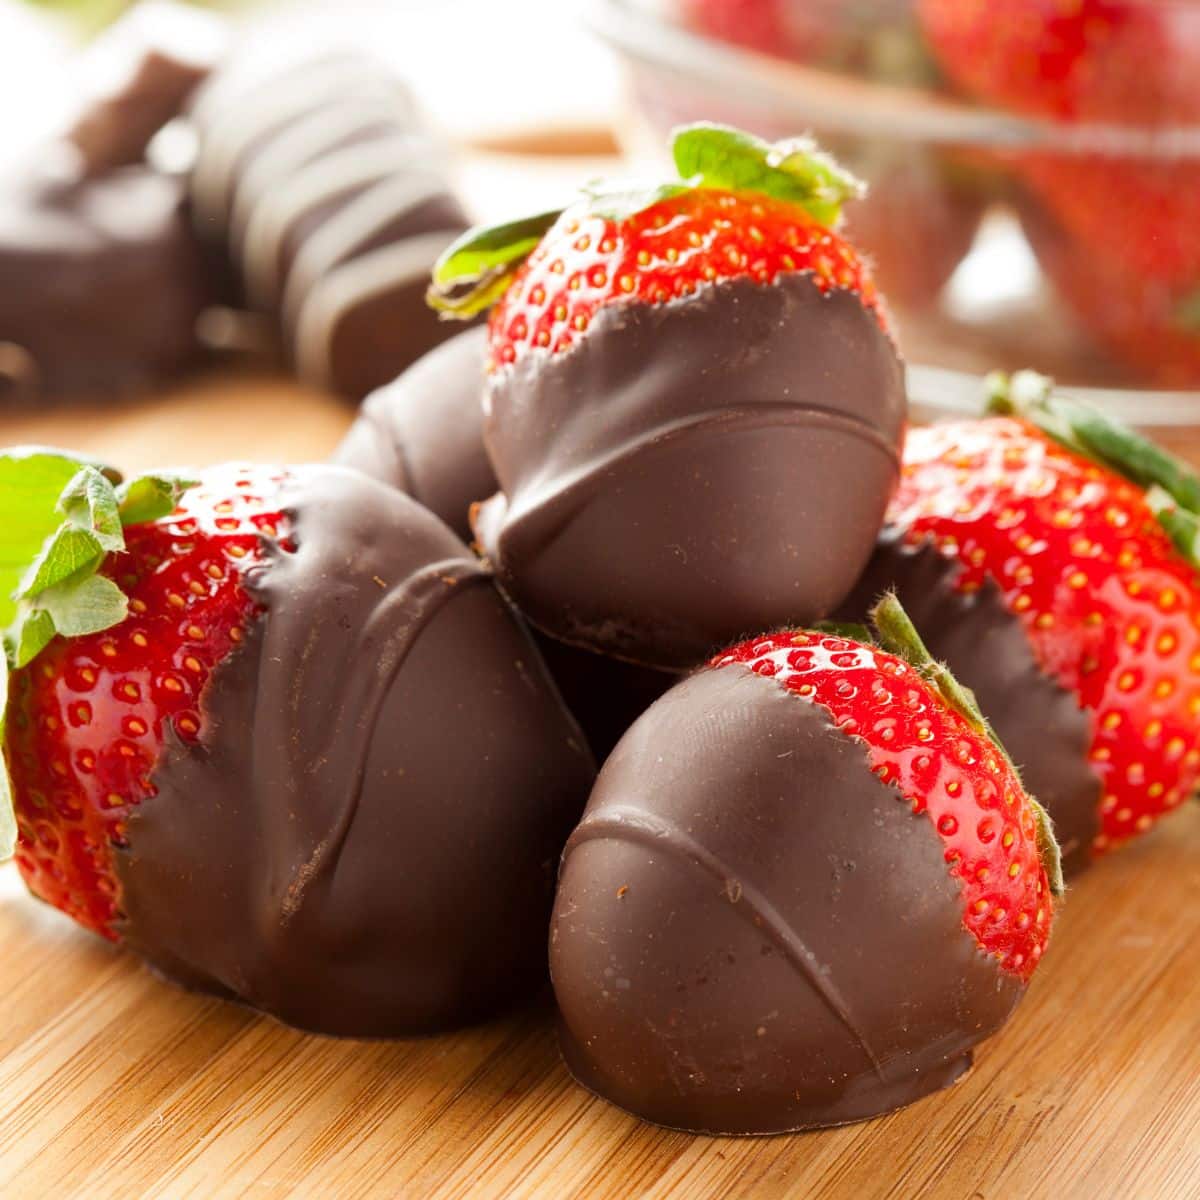 Vegan chocolate covered strawberries. 